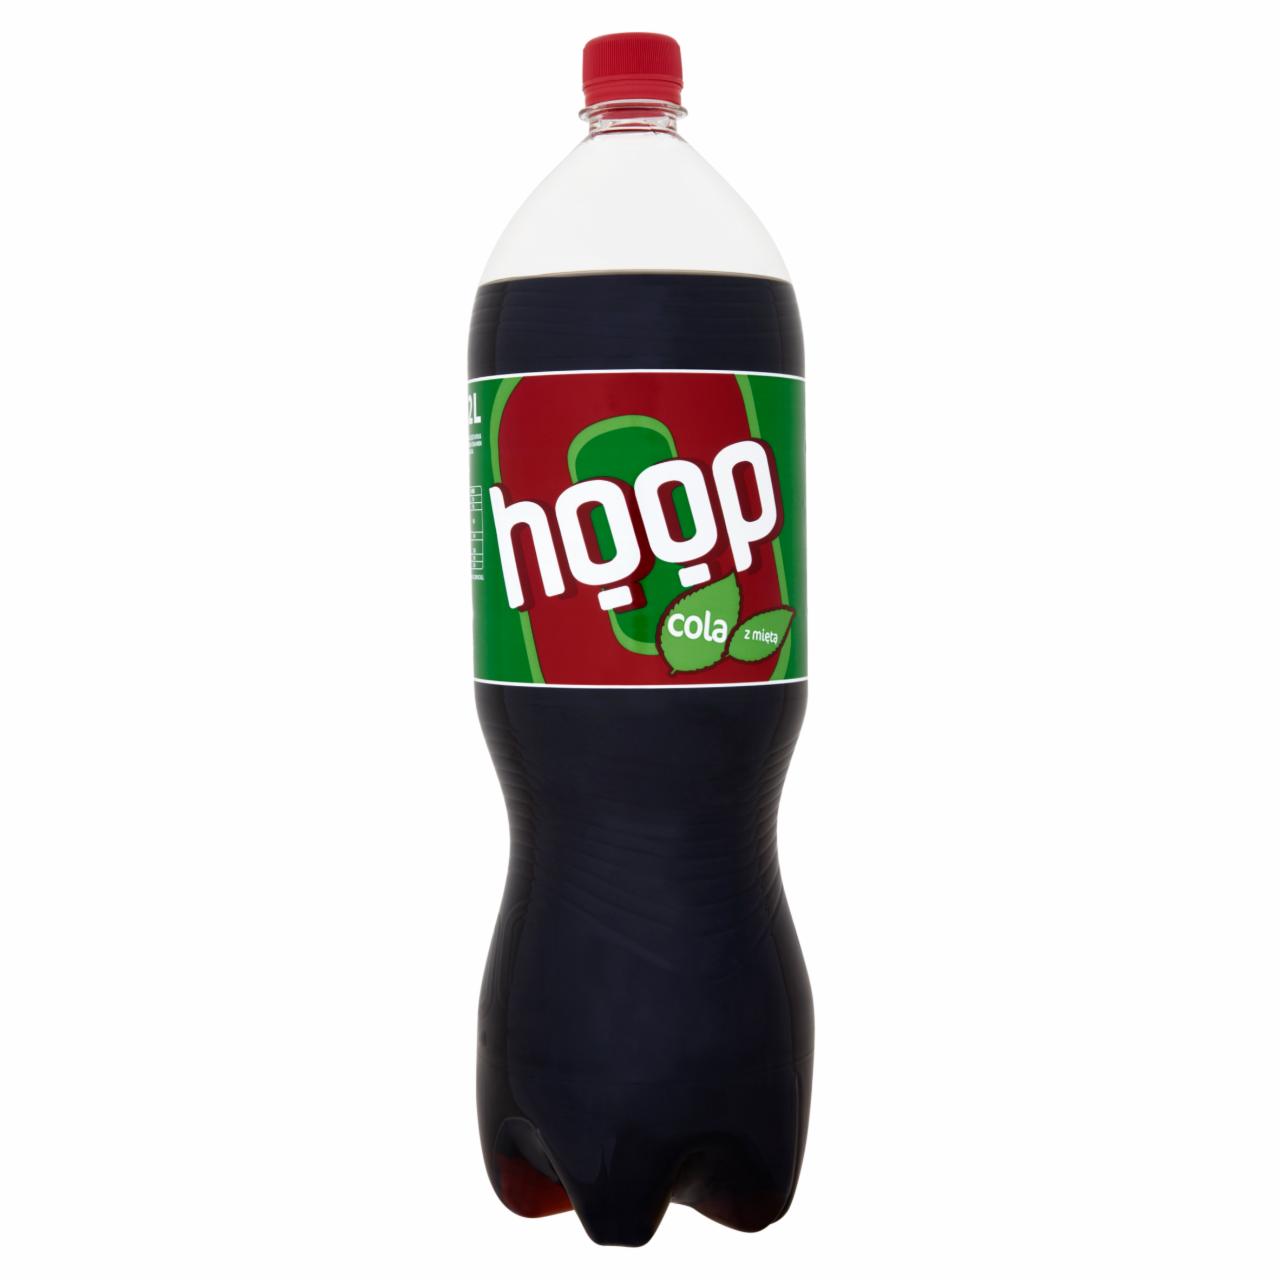 Zdjęcia - Hoop Cola z miętą Napój gazowany 2 l